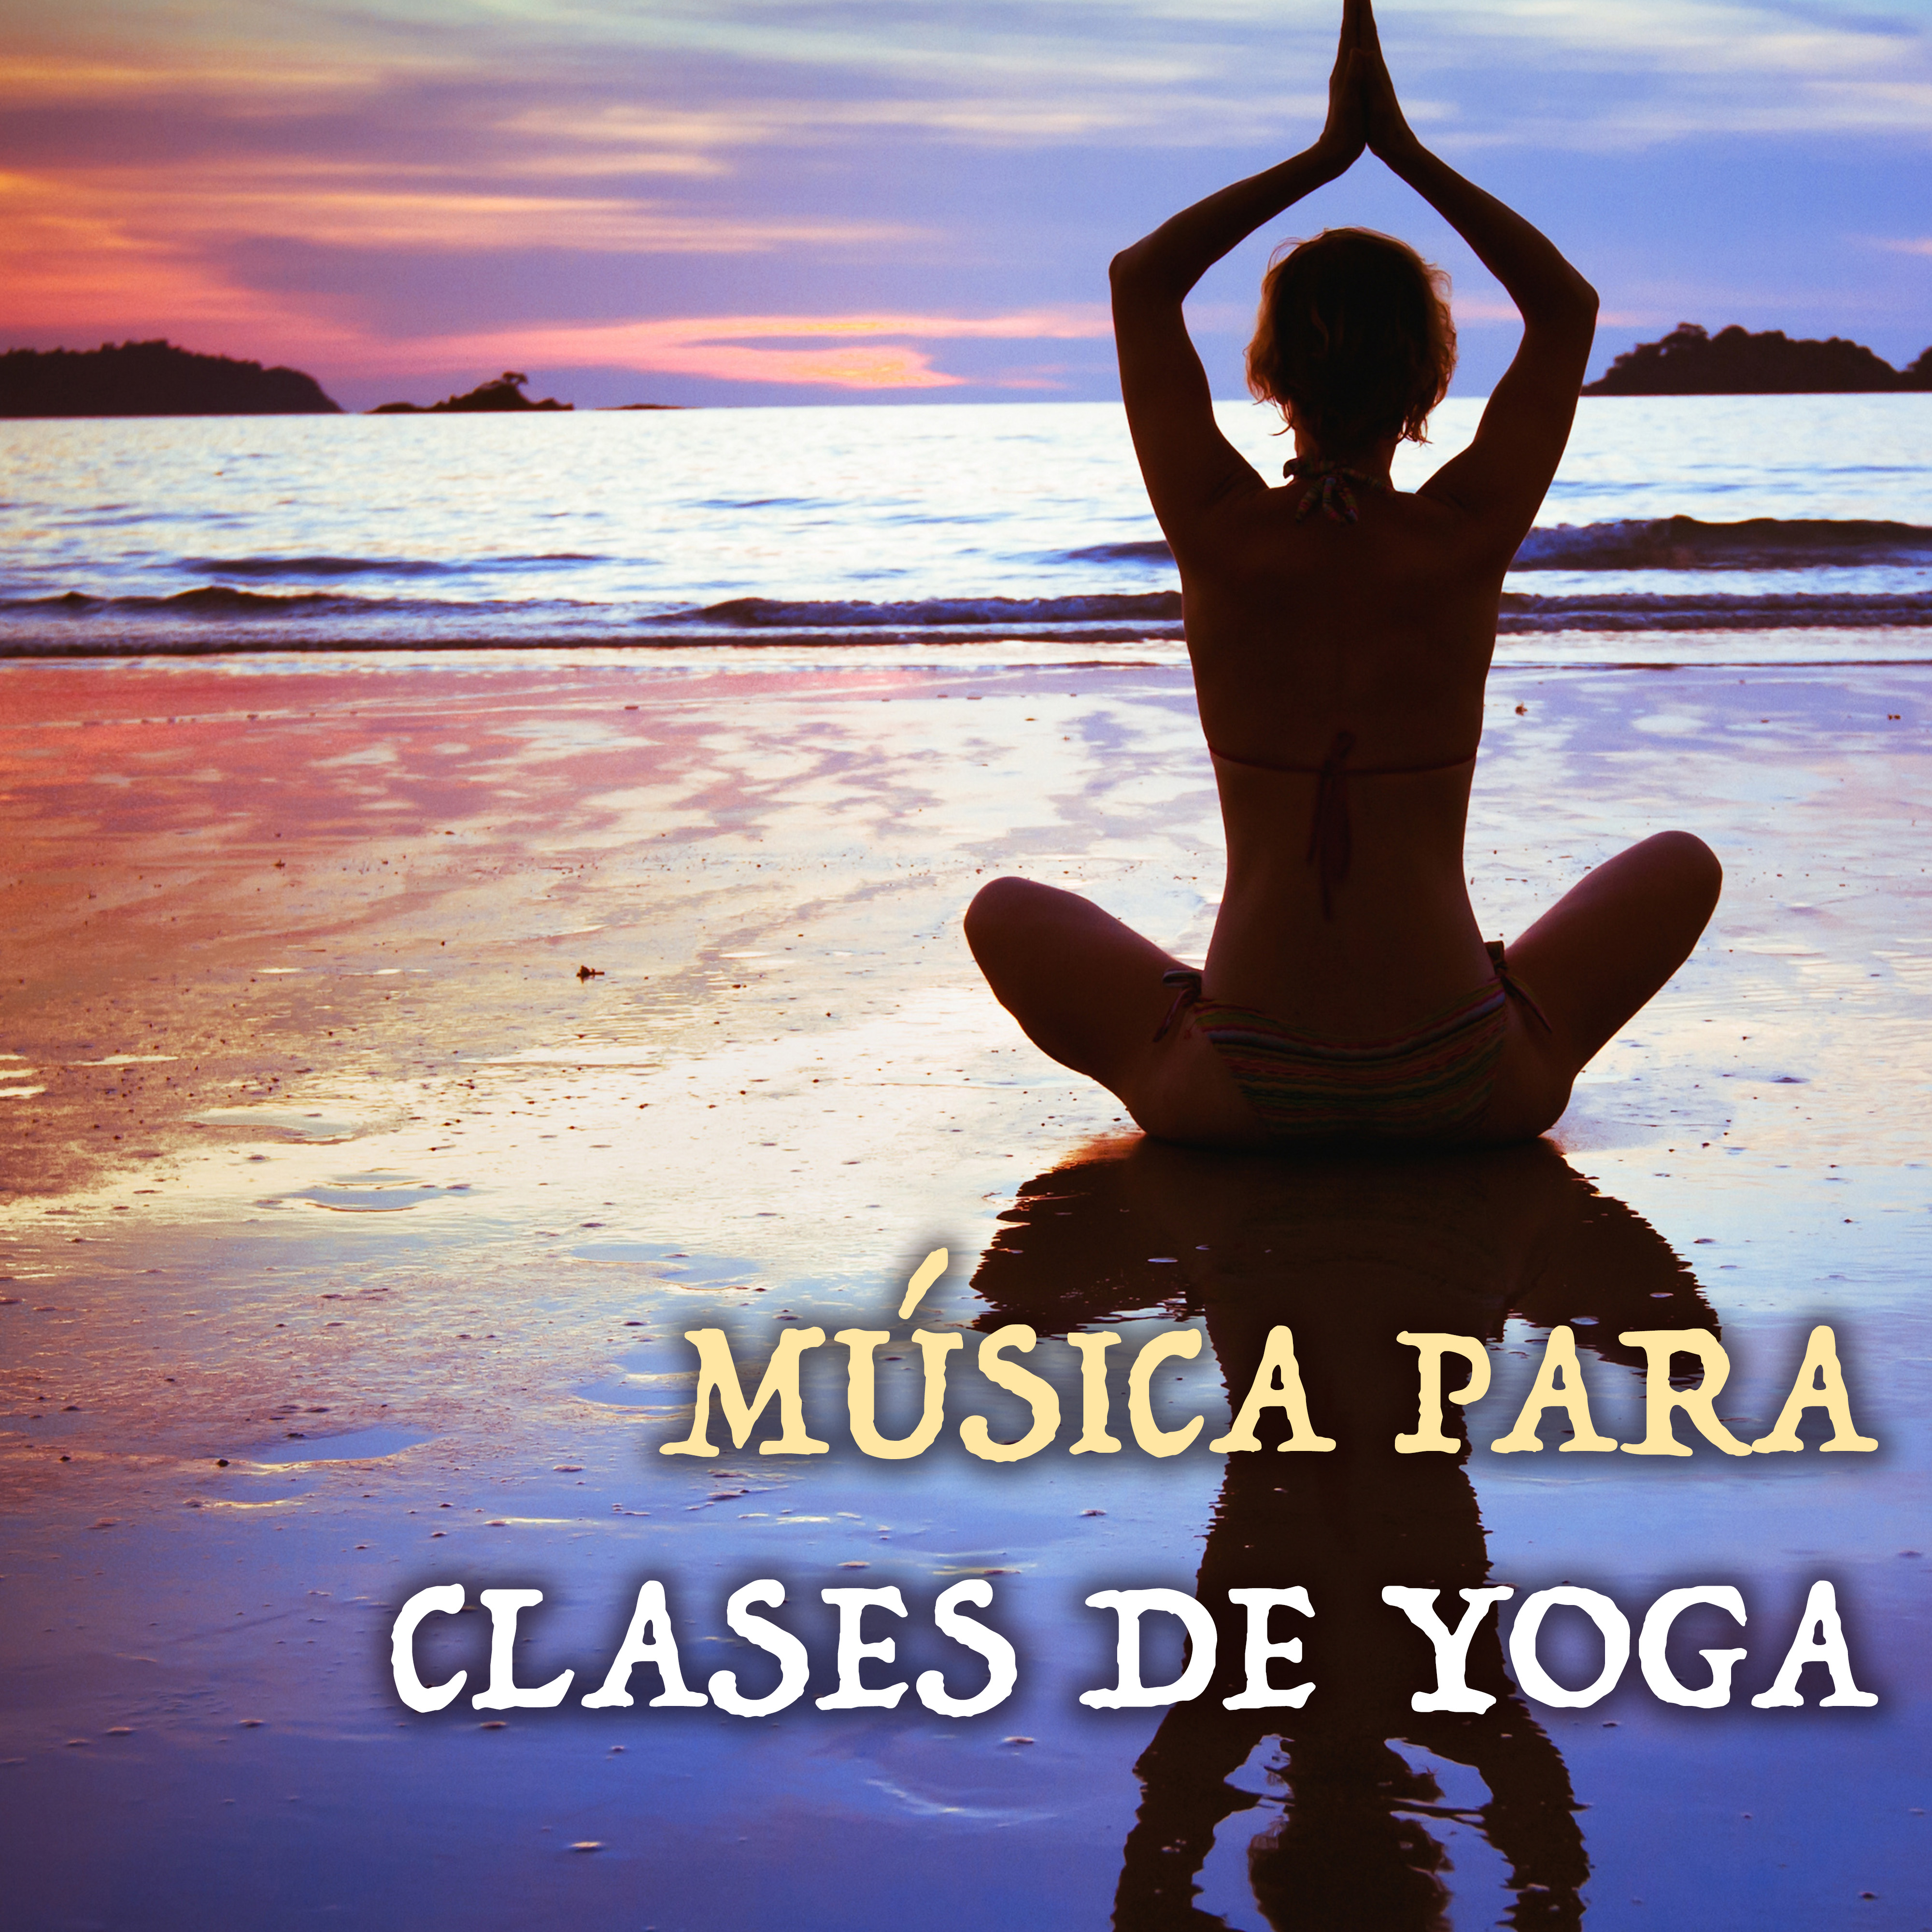 Mu sica para Clases de Yoga  Canciones Budistas Relajantes para Practicar la Meditacio n